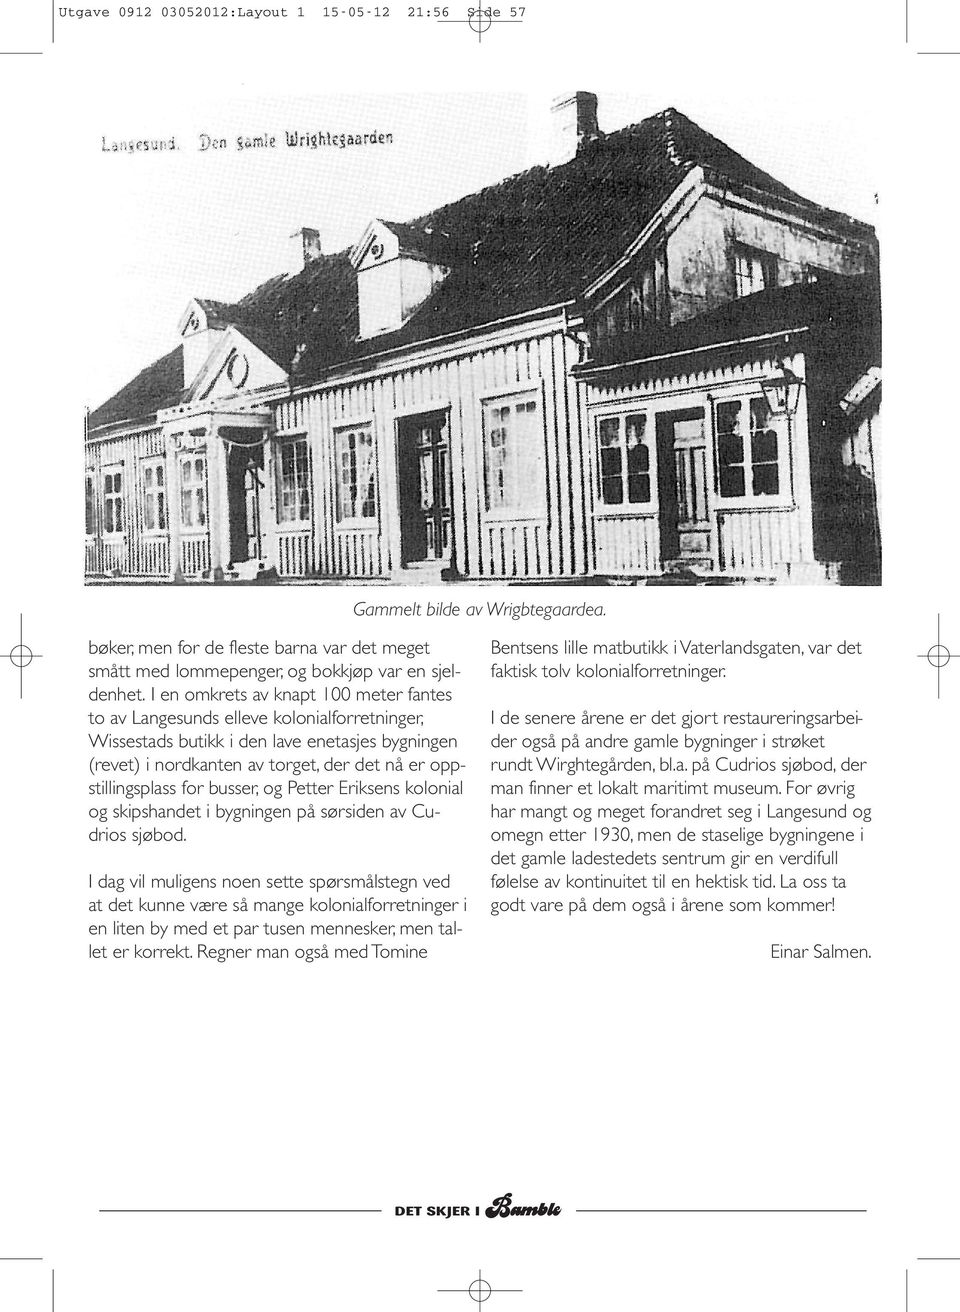 for busser, og Petter Eriksens kolonial og skipshandet i bygningen på sørsiden av Cudrios sjøbod.